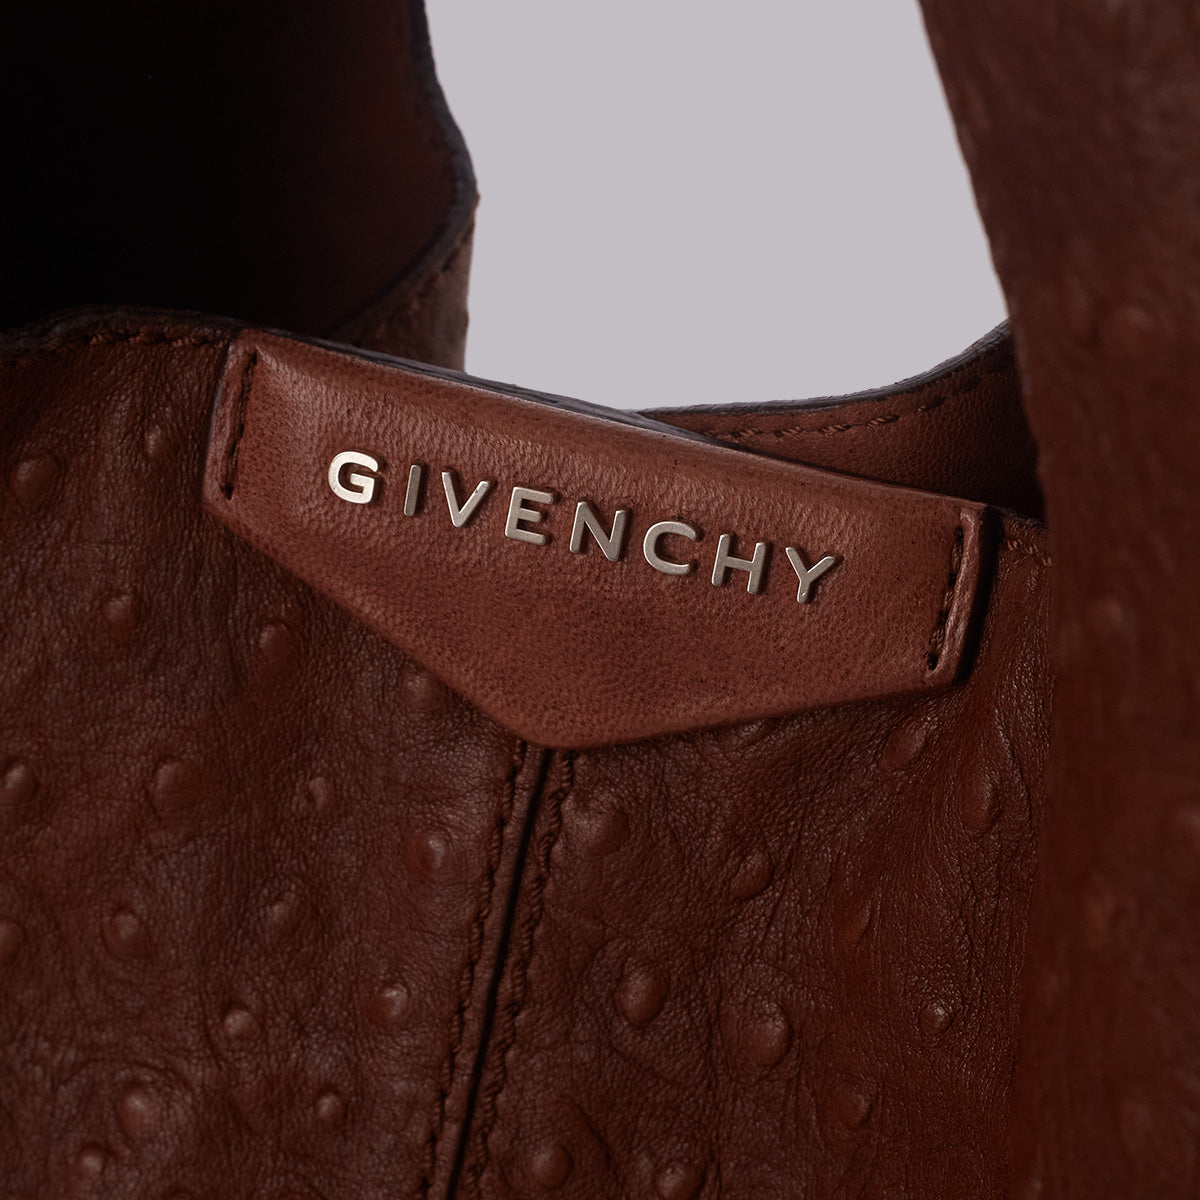 Bolsa Givenchy Vintage Marrom